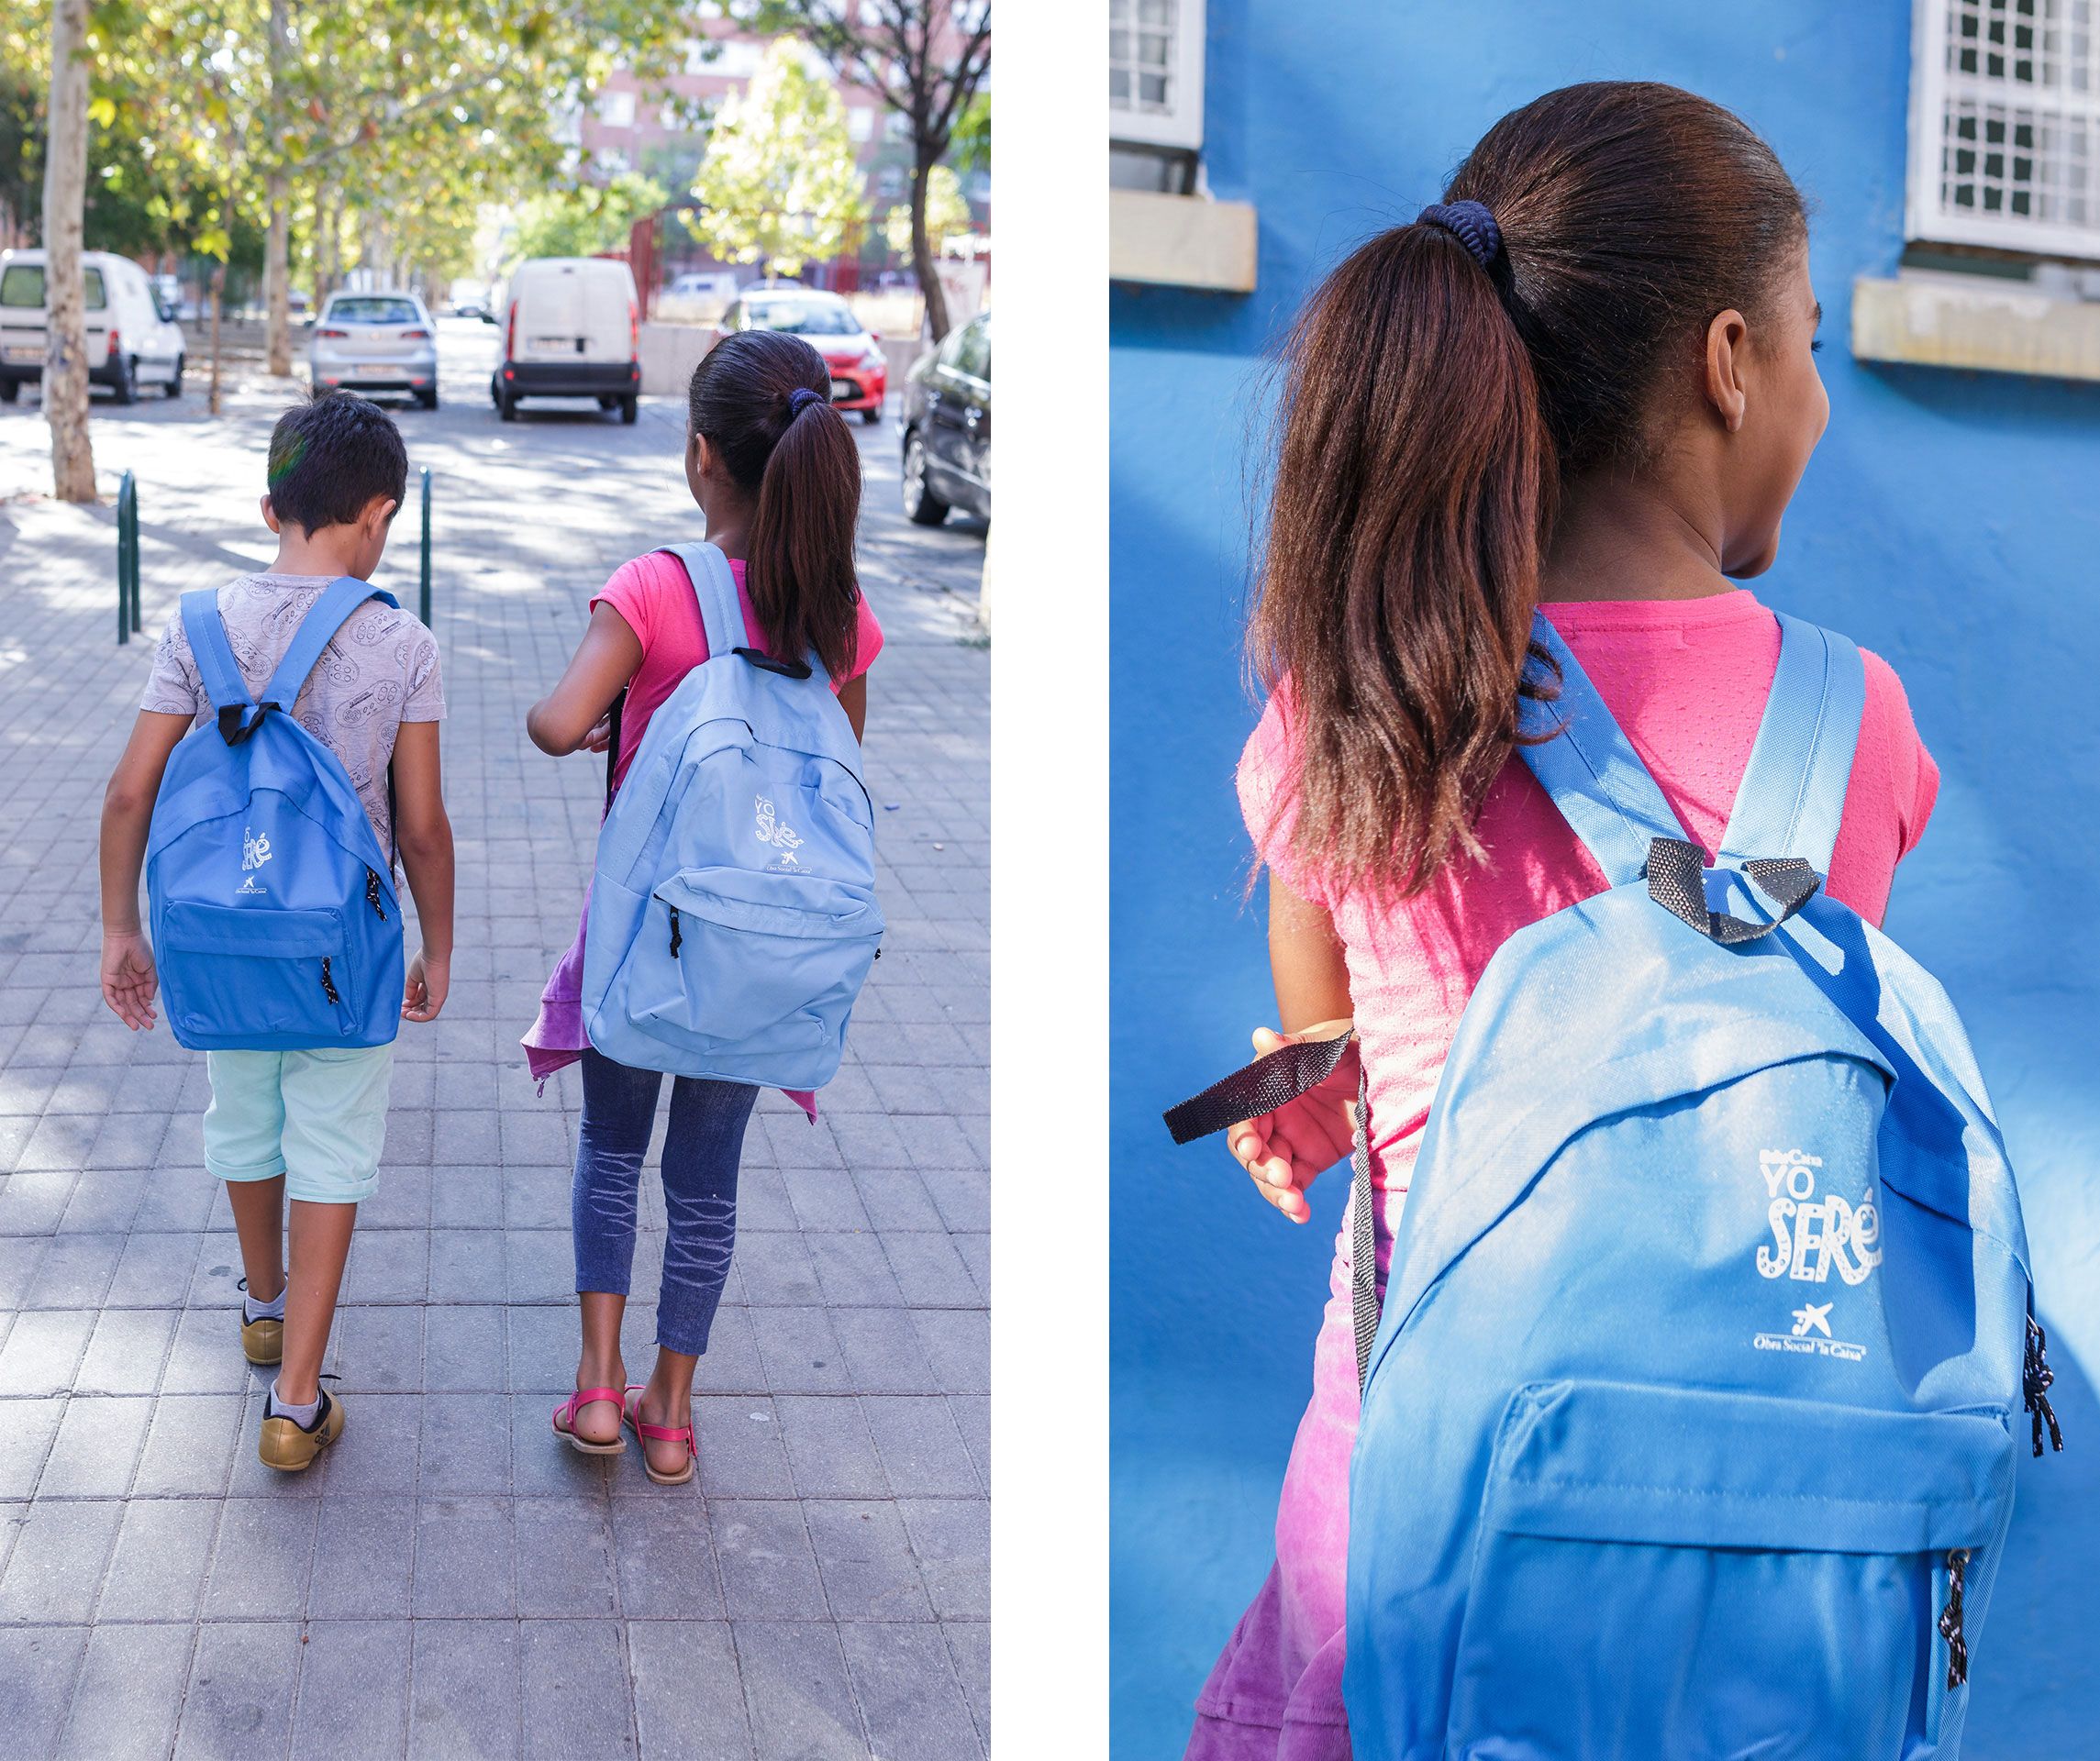 Las mochilas que facilita cada año CaixaProinfancia al inicio del curso escolar a niños en situación de vulnerabilidad